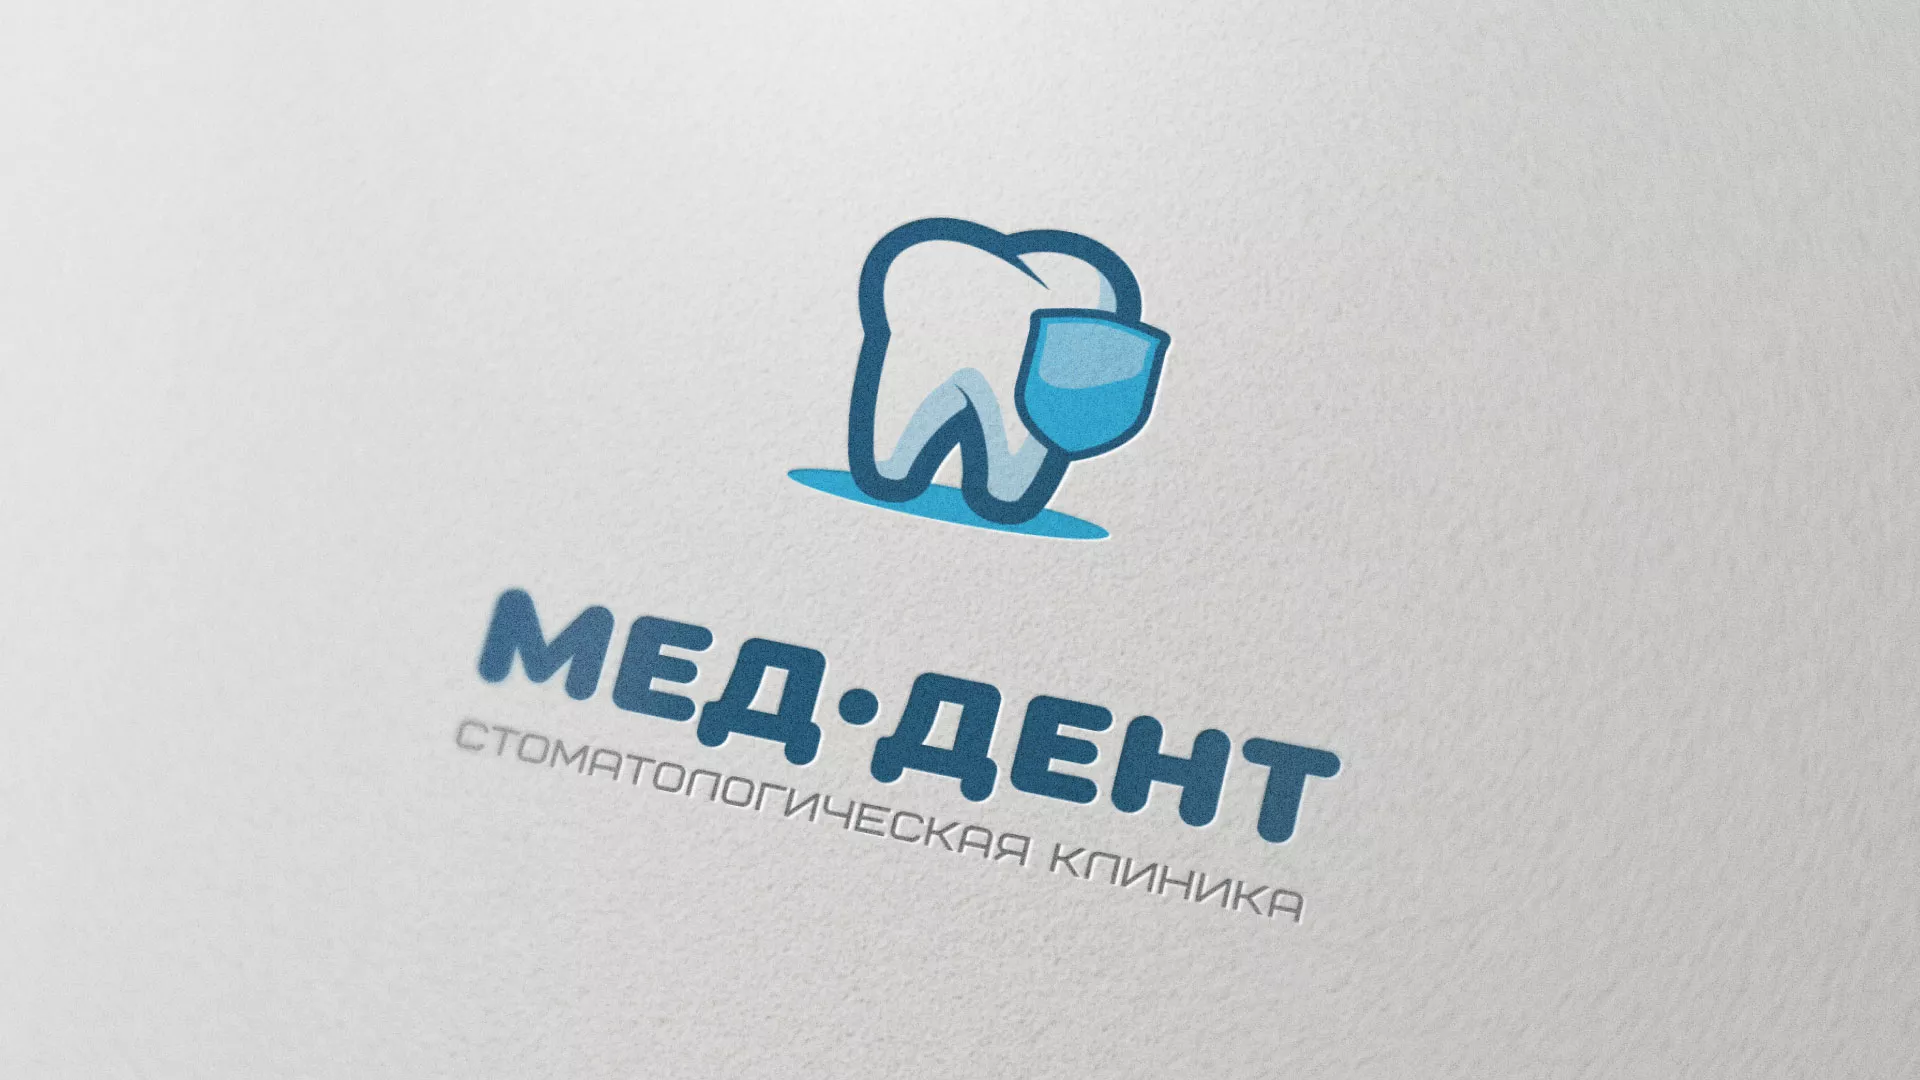 Разработка логотипа стоматологической клиники «МЕД-ДЕНТ» в Урюпинске